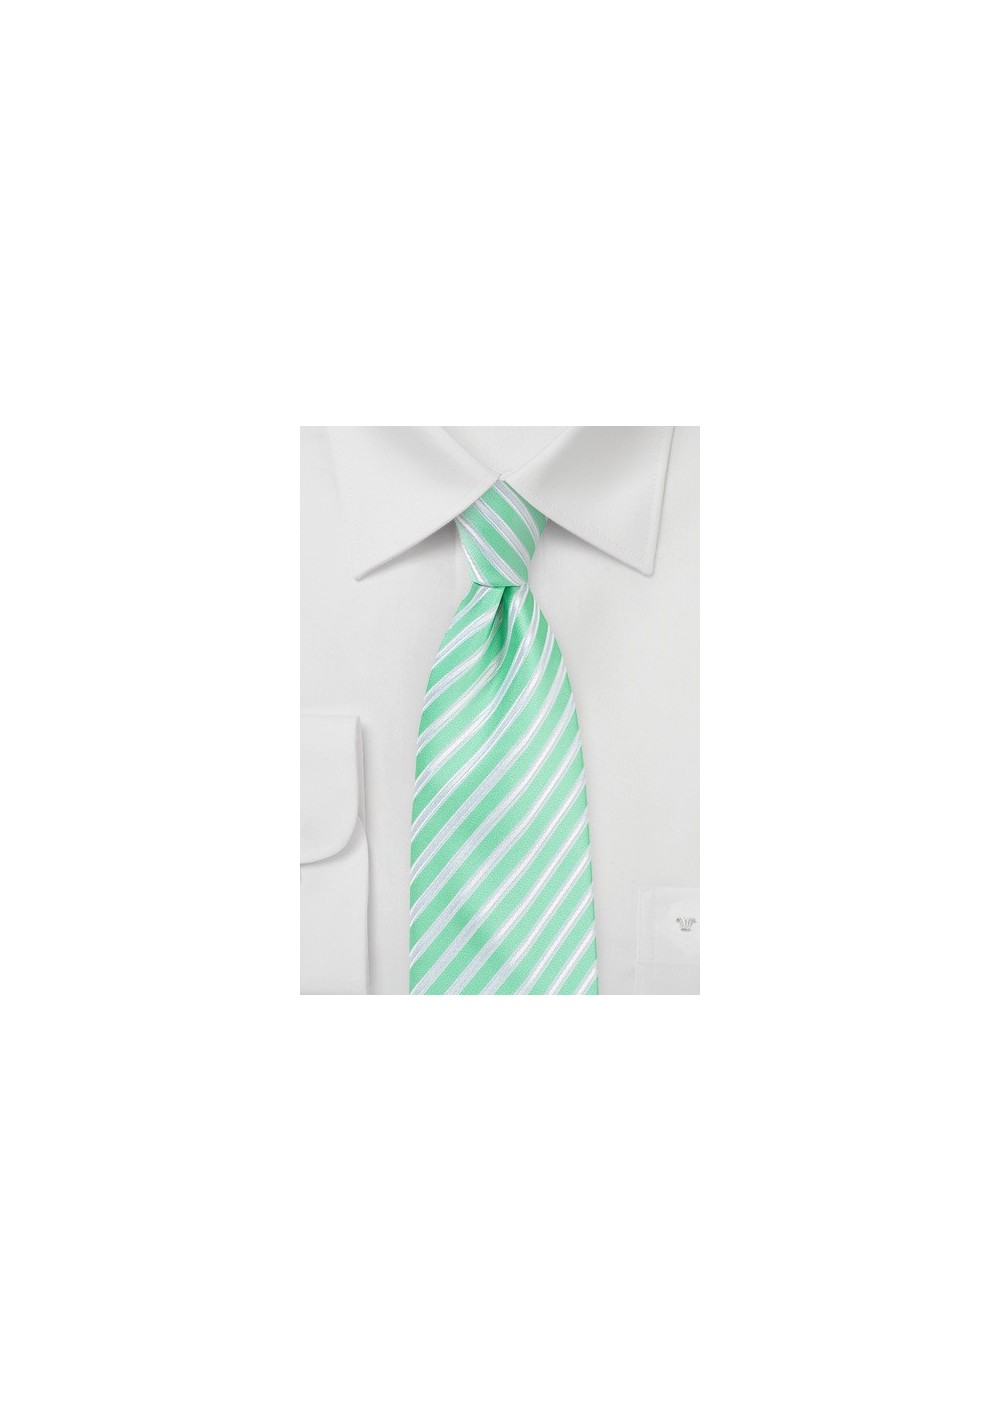 Striped Necktie in Spring Bud Green